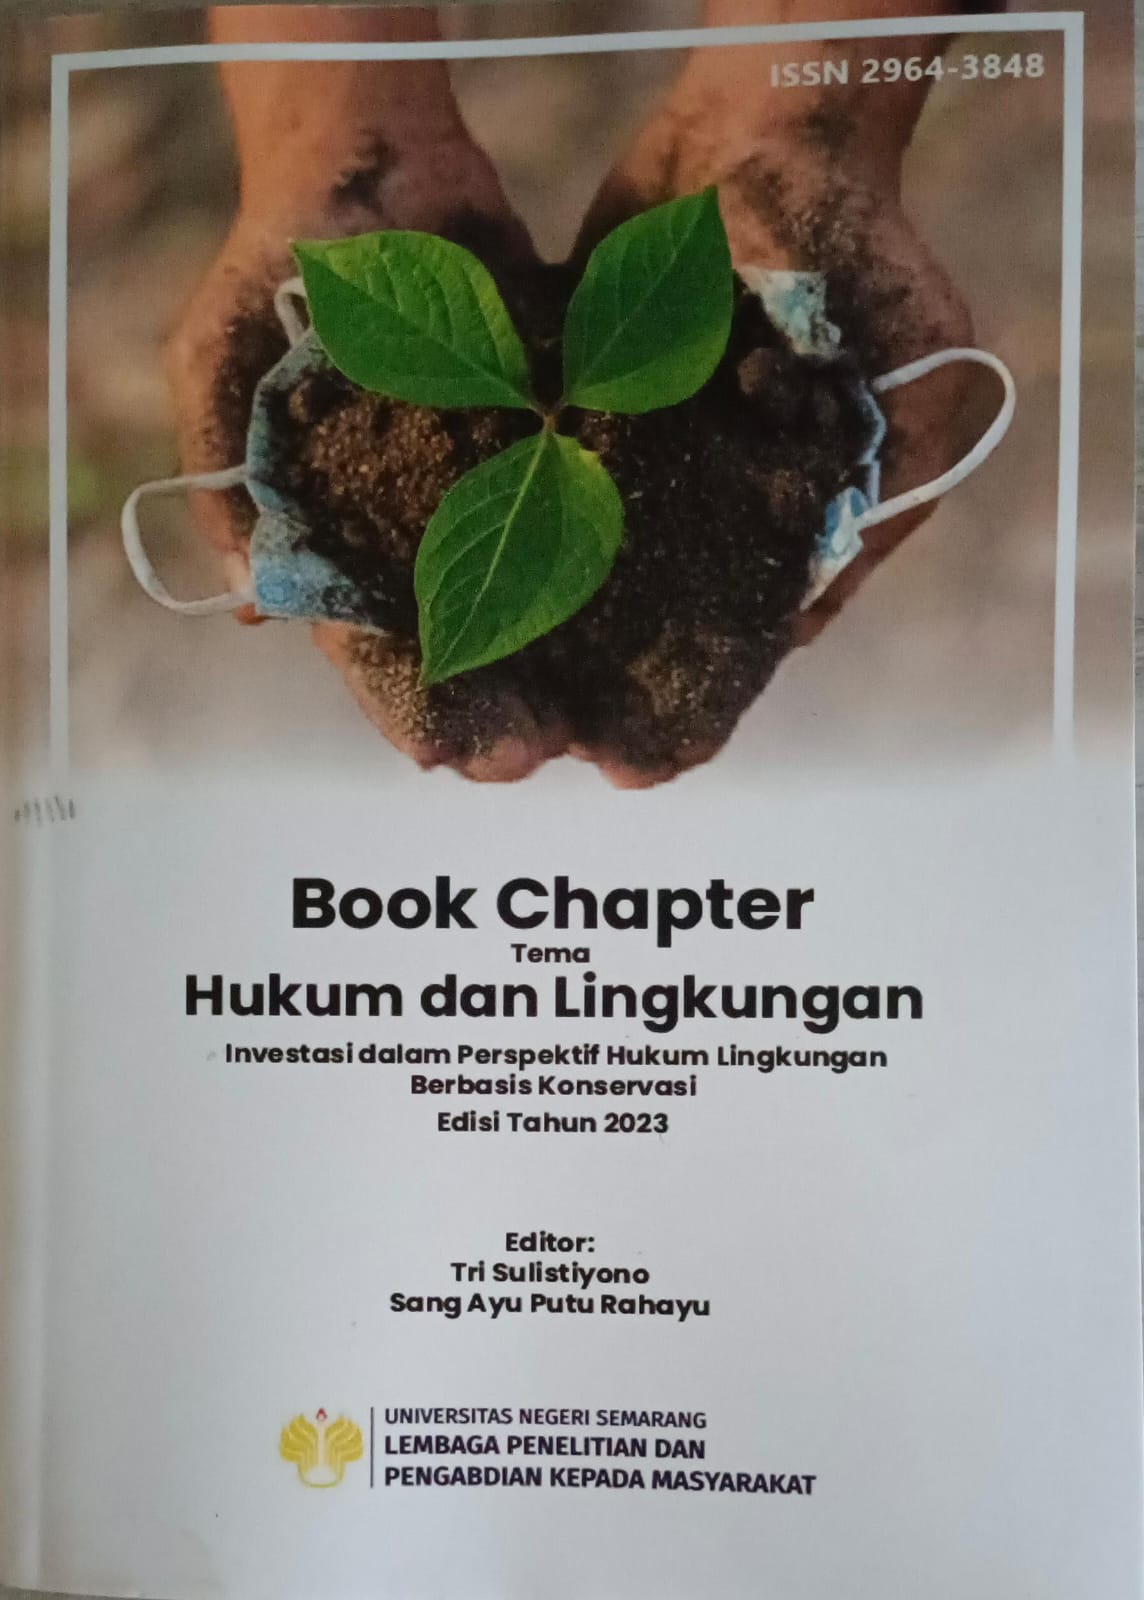 Book Chapter Tema: hukum lingkungan investasi dalam perspektif hukum lingkungan berbasis konservasi